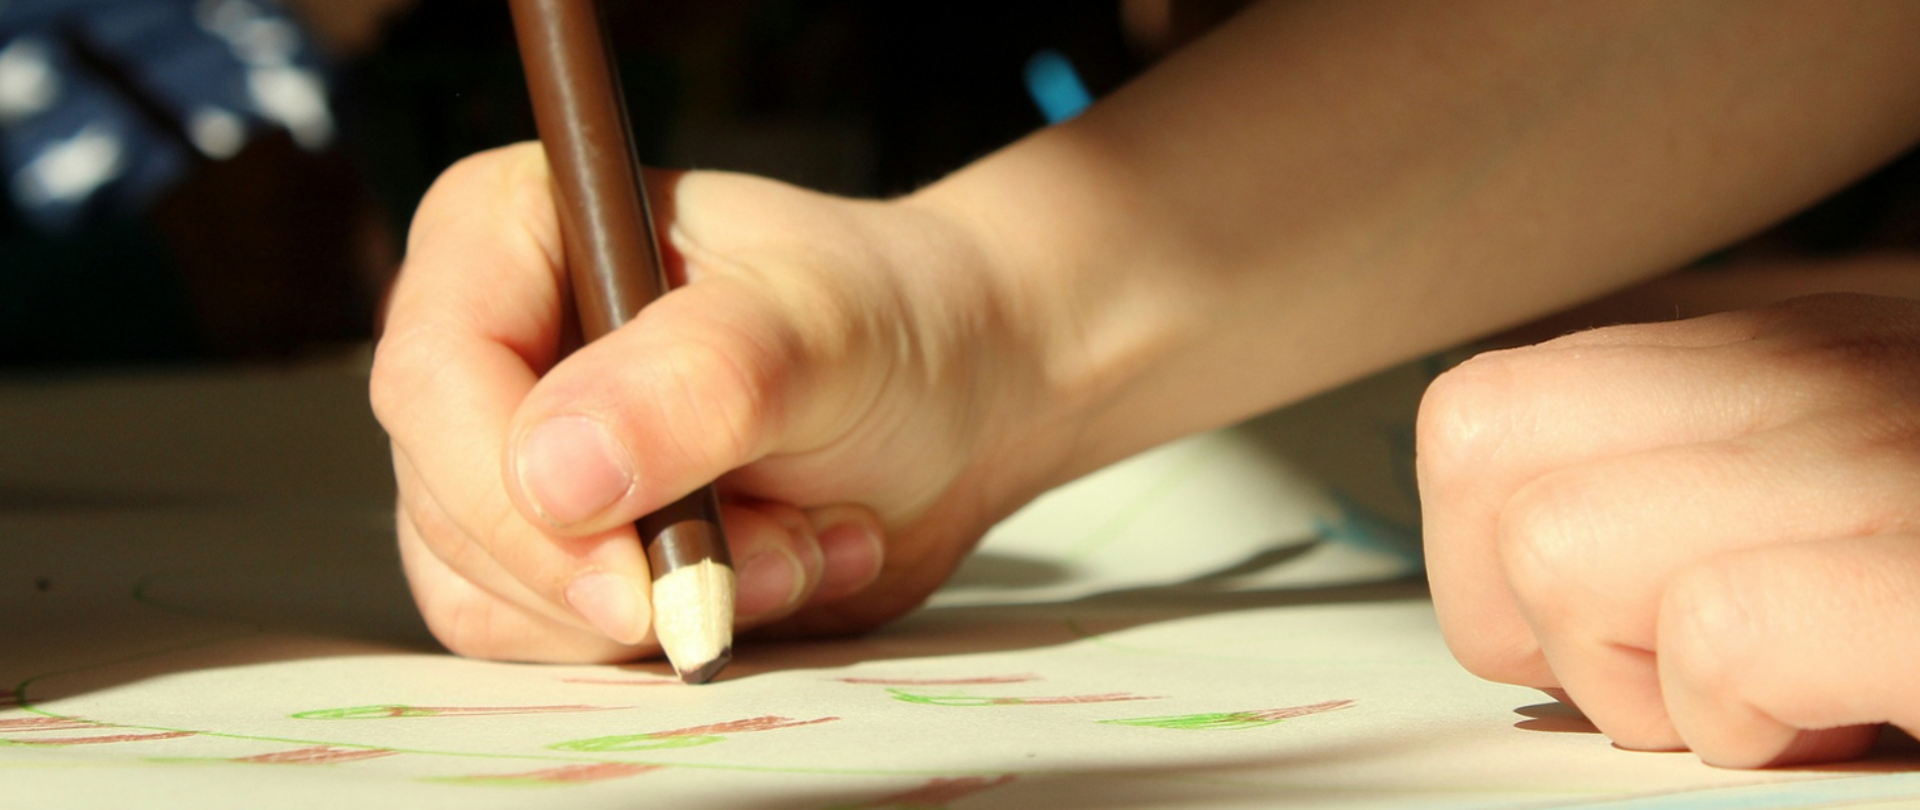 Obraz przedstawia rękę trzymającą brązową kredkę w trakcie rysowania pracy na papierze